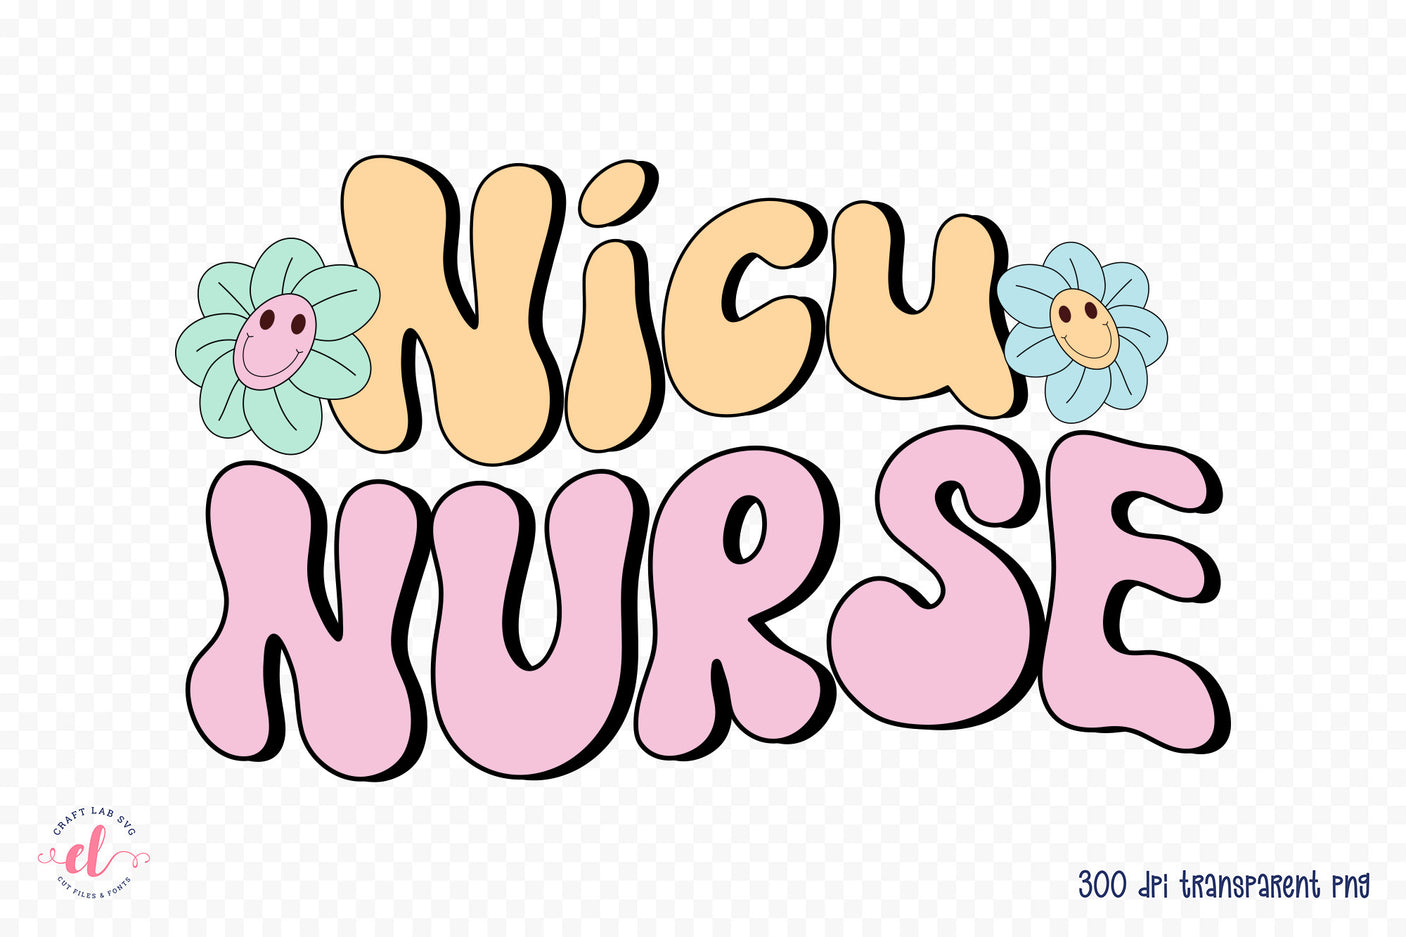 Retro Nurse Sublimation Design - Nicu Nurse PNG